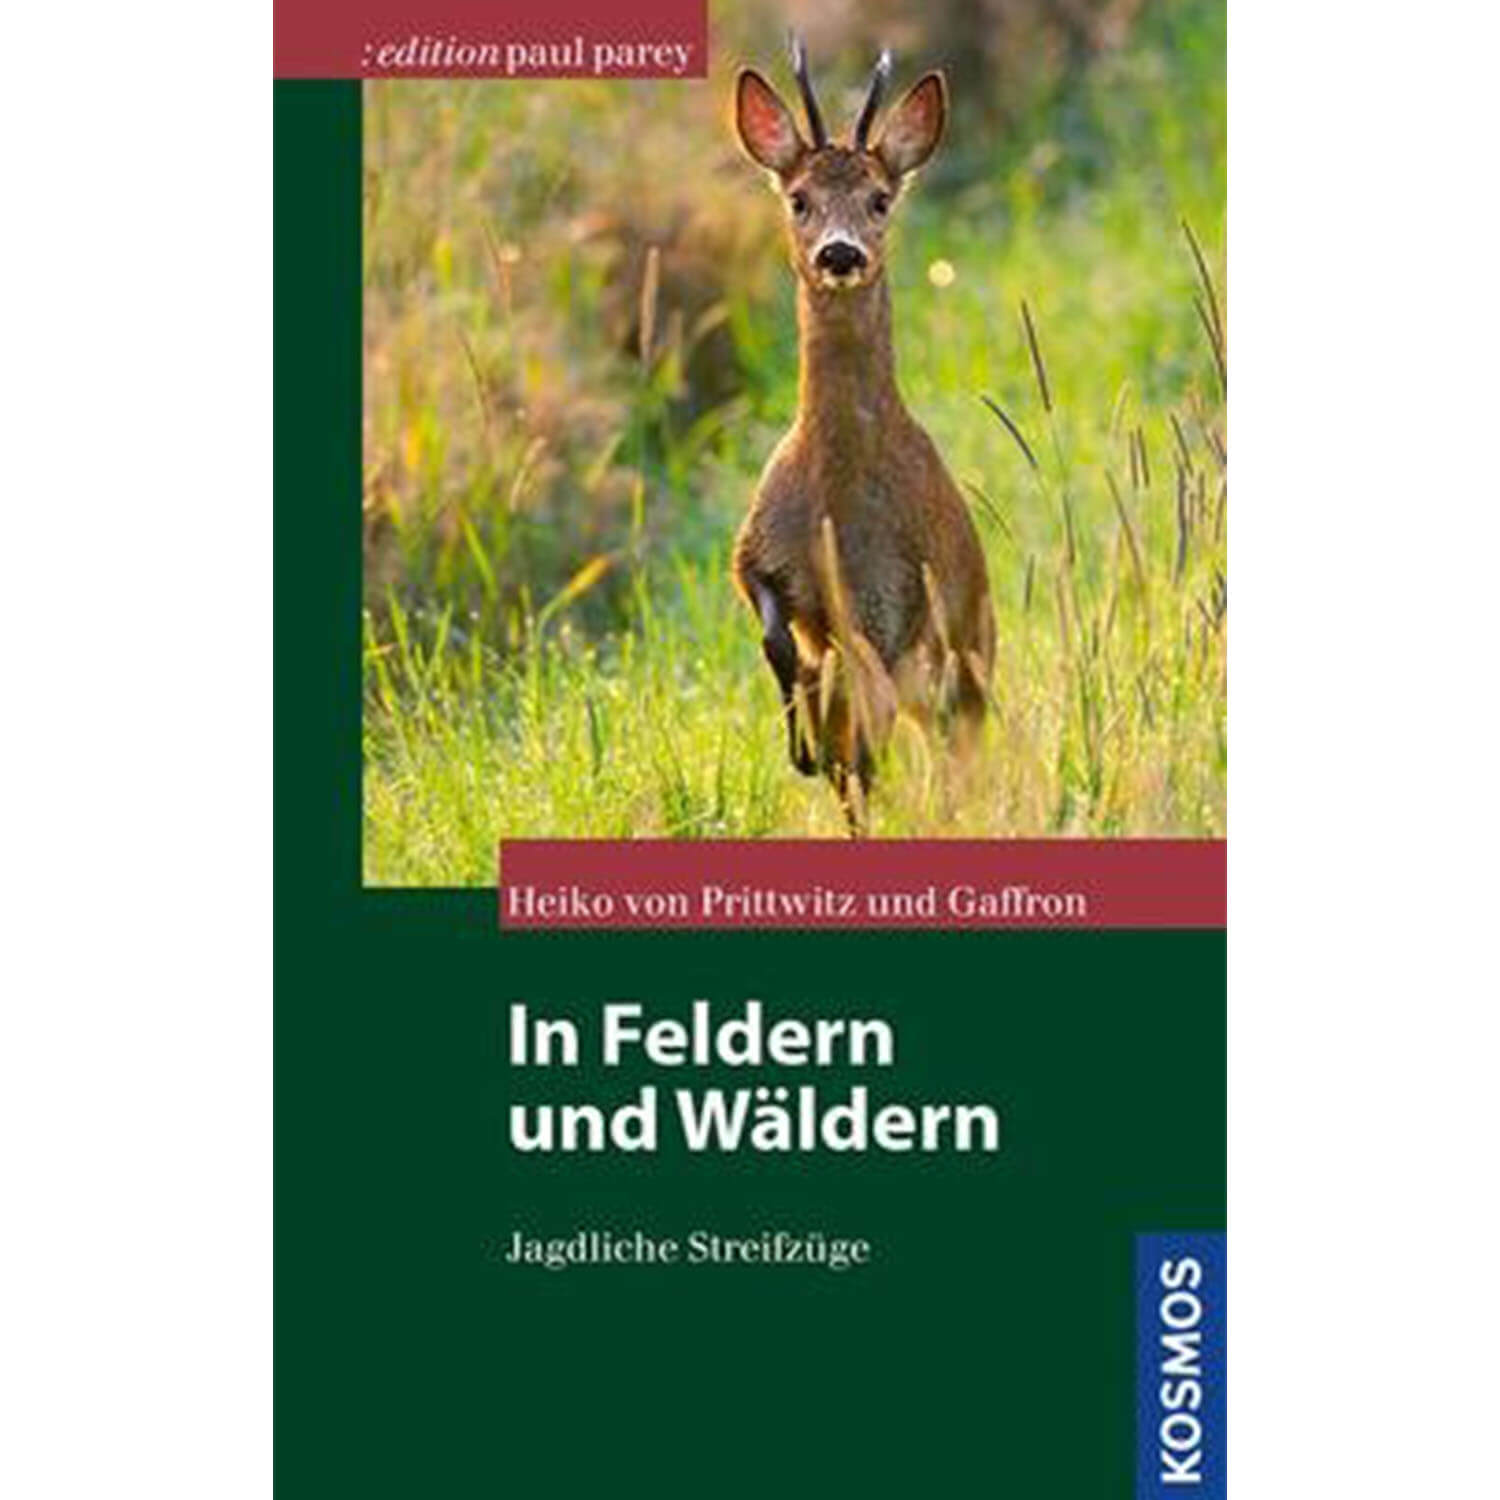 In Feldern und Wäldern - Buch - von Prittwitz und Gaffron - Jagdausrüstung